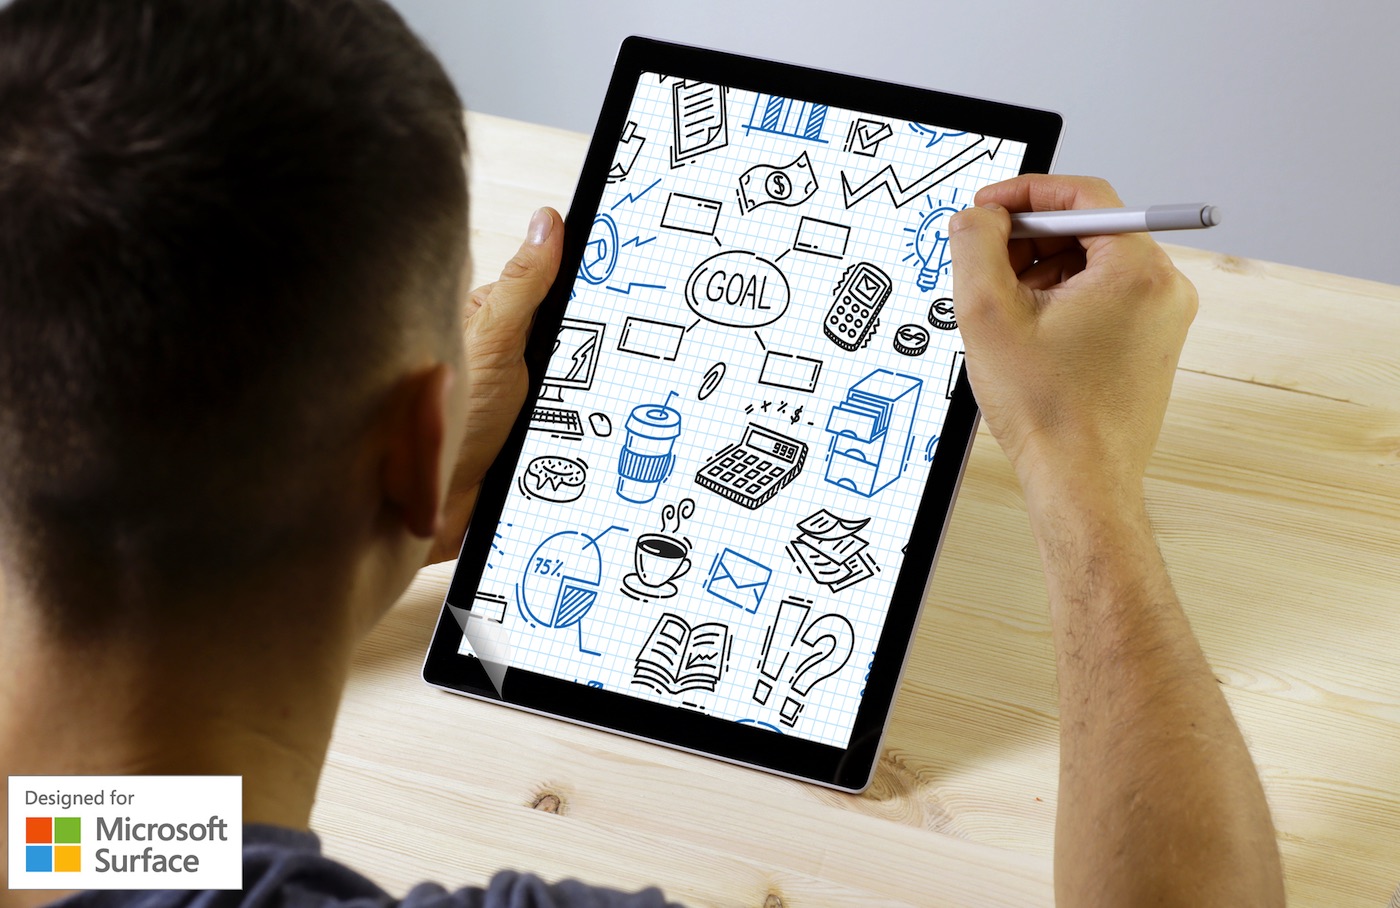 doodroo: la pellicola effetto carta nata su iPad è “Designed for Microsoft Surface”